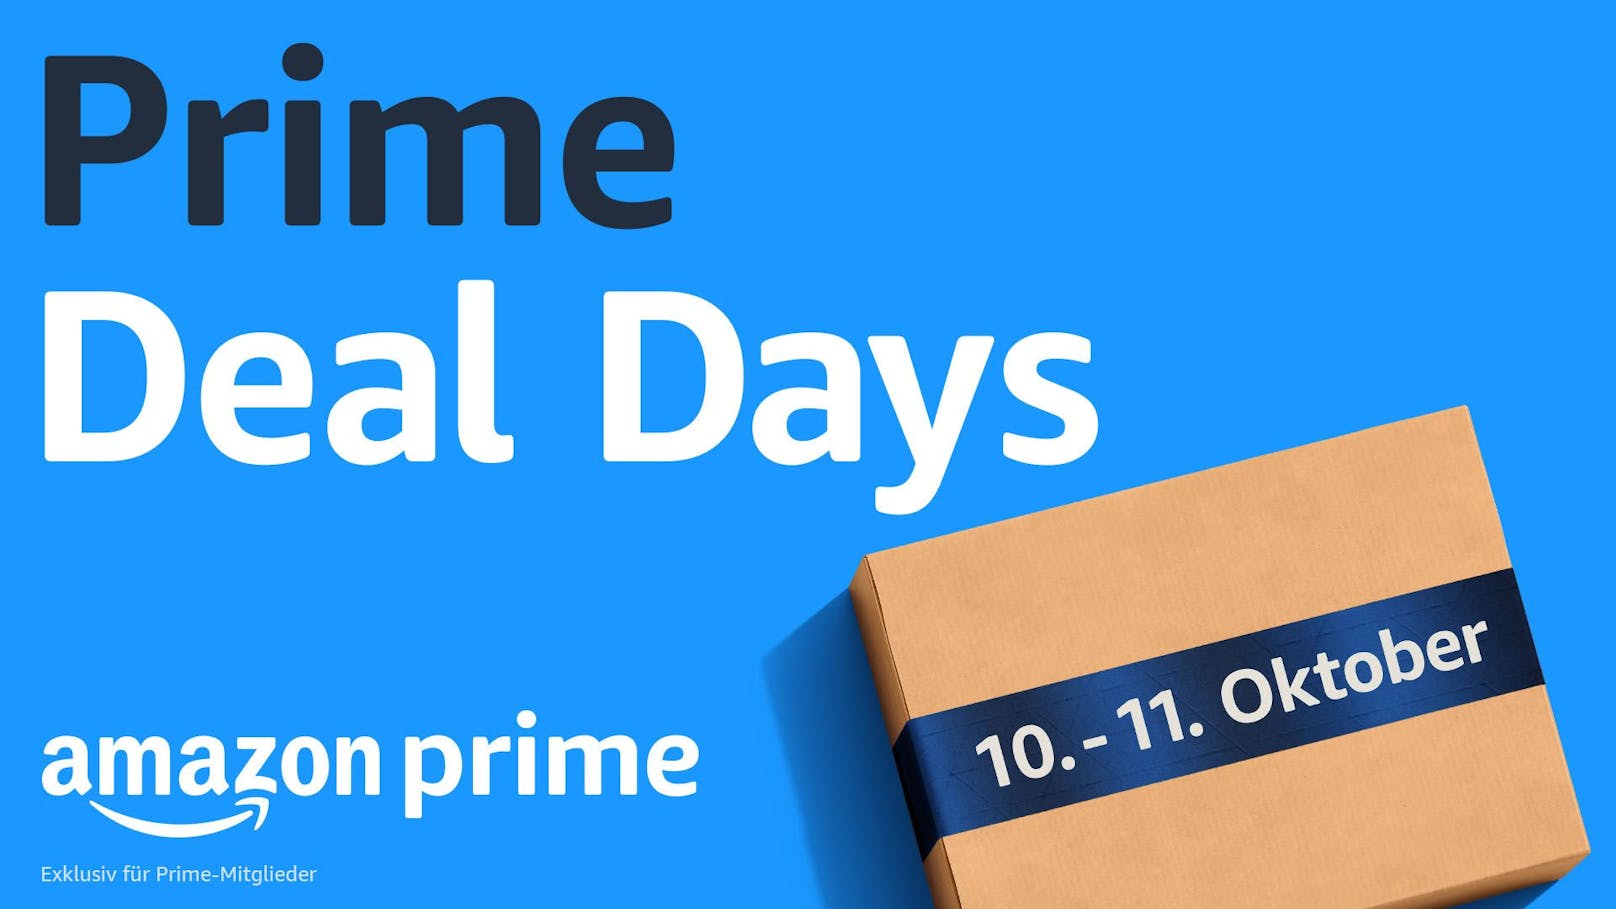 Vom 10. bis zum 11. Oktober gibt es auf Amazon.de stark reduzierte Produkte von Top-Marken für Prime-Mitglieder.